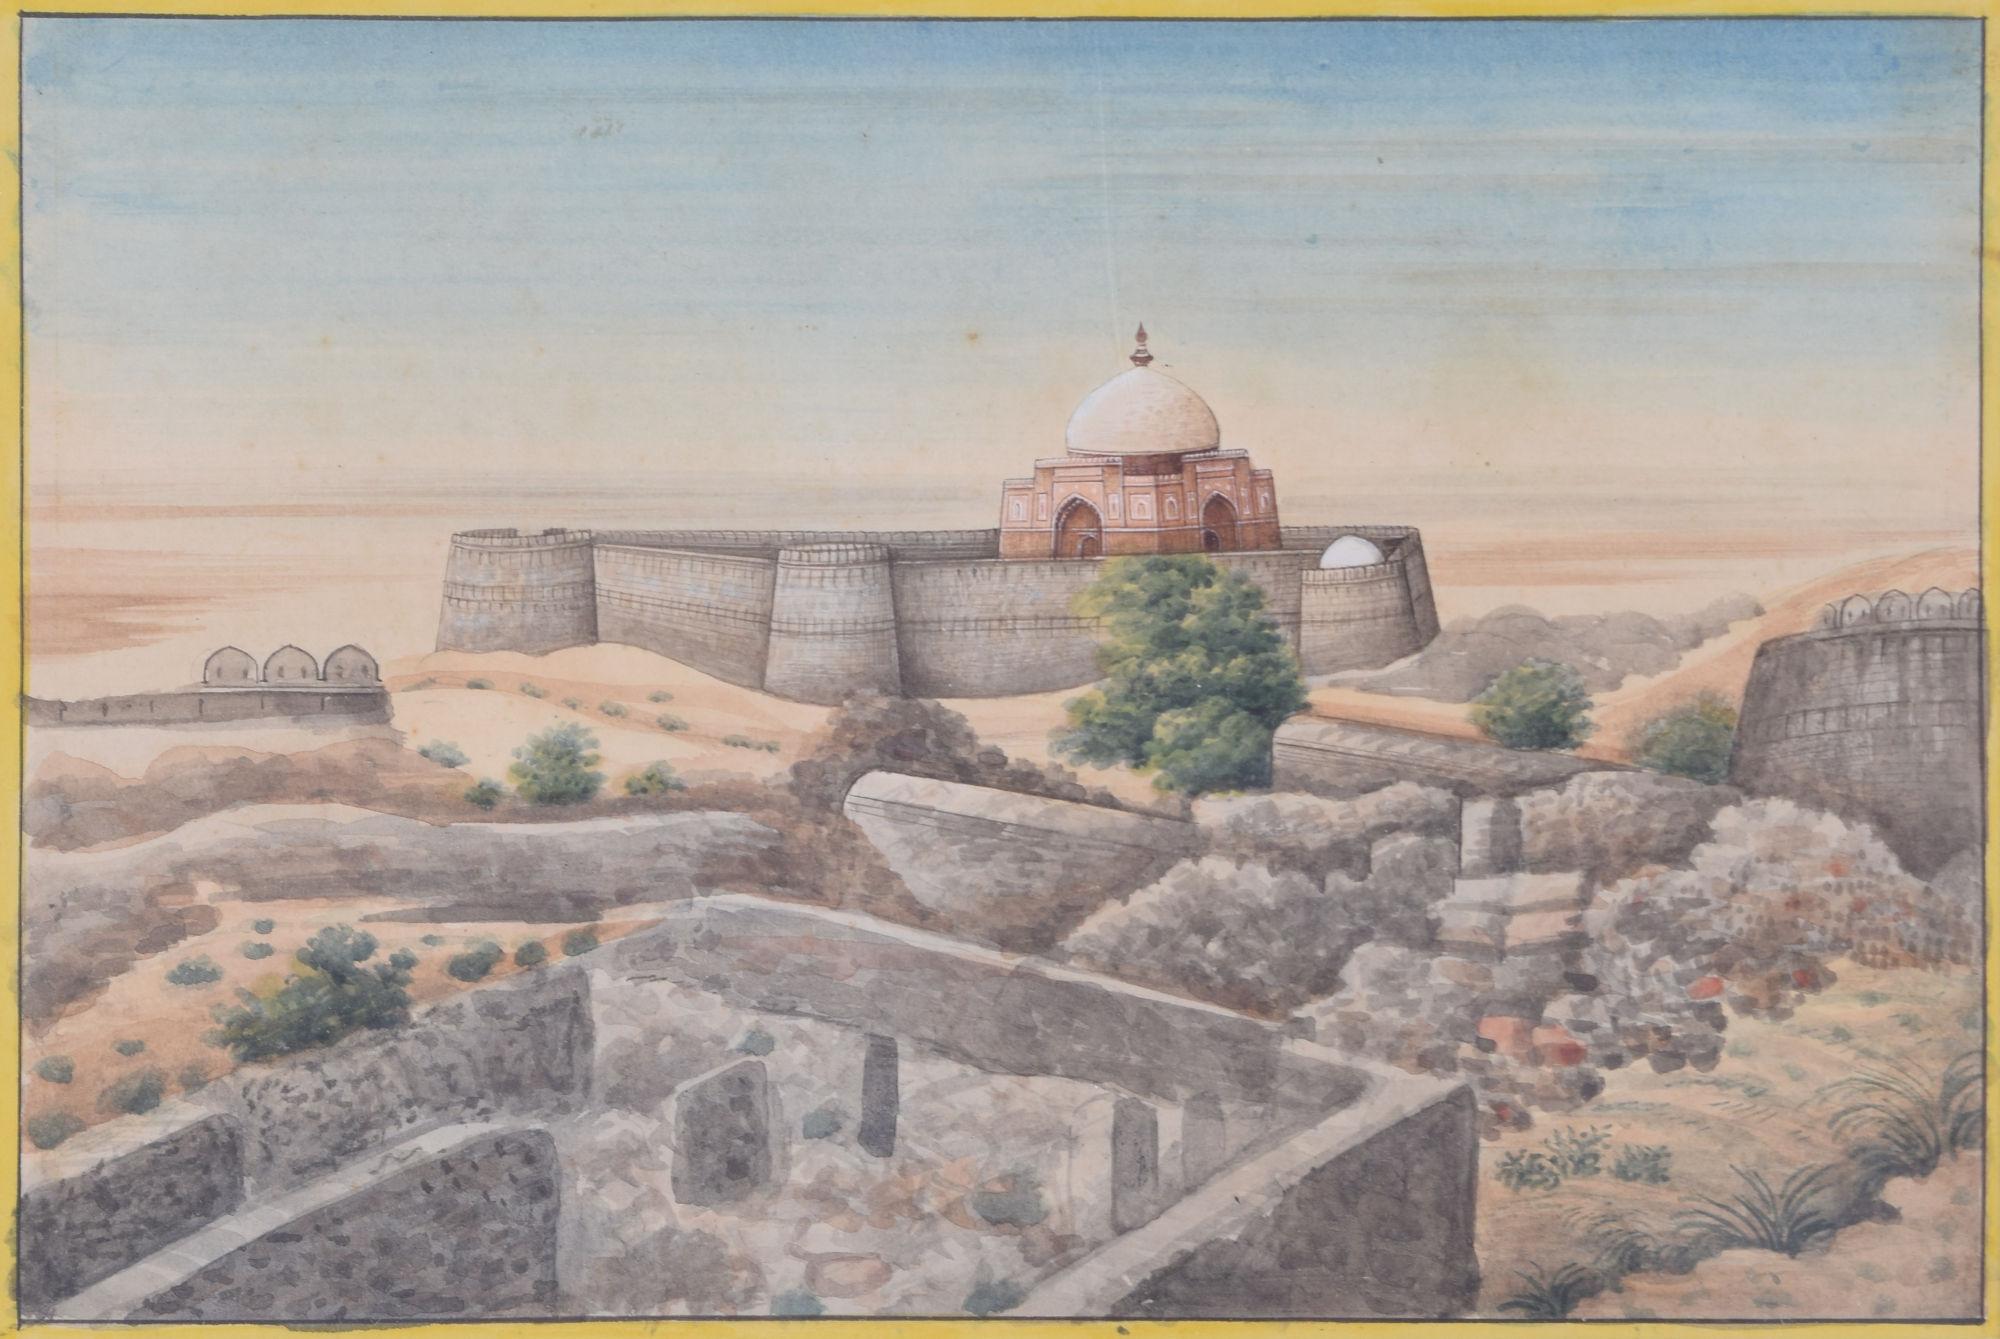 Unknown Landscape Art - Tughlaqabad Fort, Delhi, India watercolour